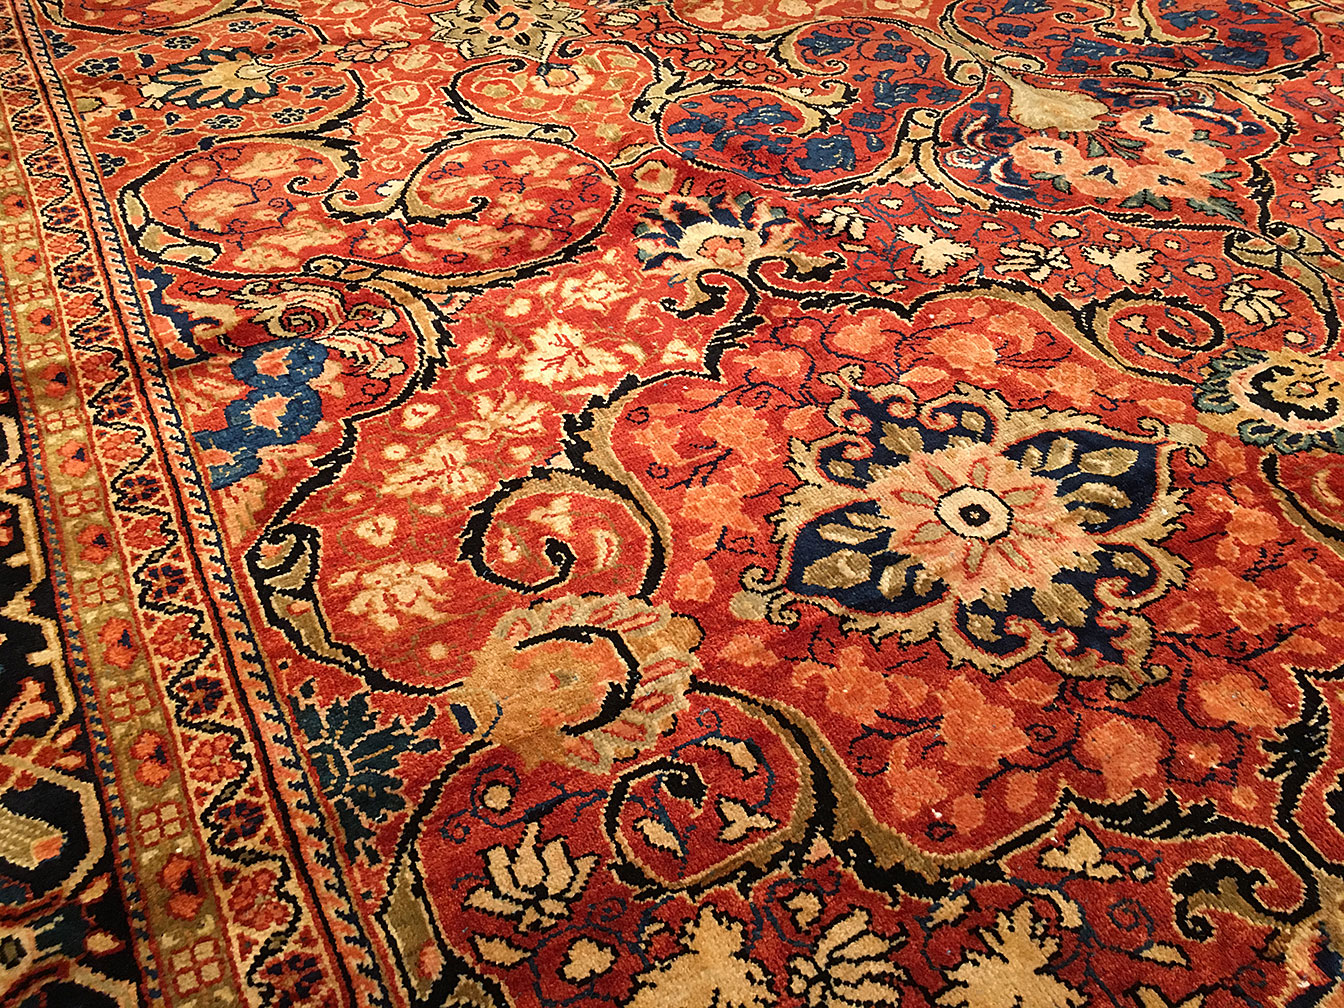 Antique mahal Carpet - # 51389